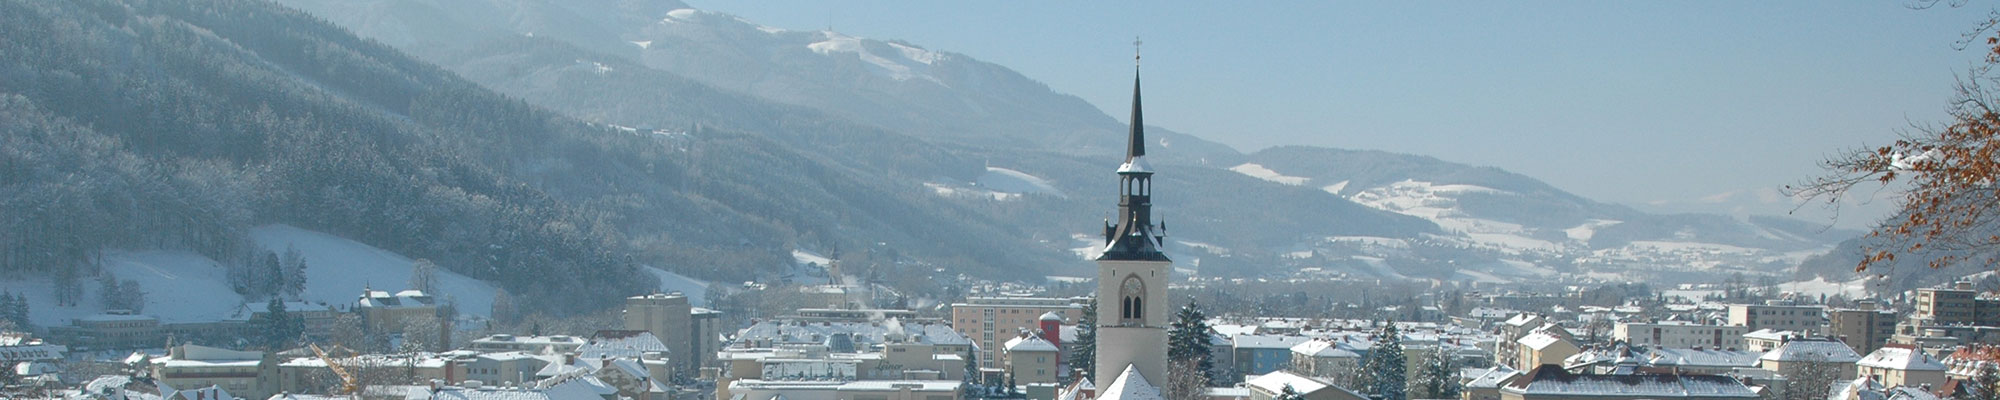 Blick vom Schlossberg auf die verschneite Stadt Bruck an der Mur - im Vordergrund die Pfarrkirche und dahinter das herrliche Bergpanorama